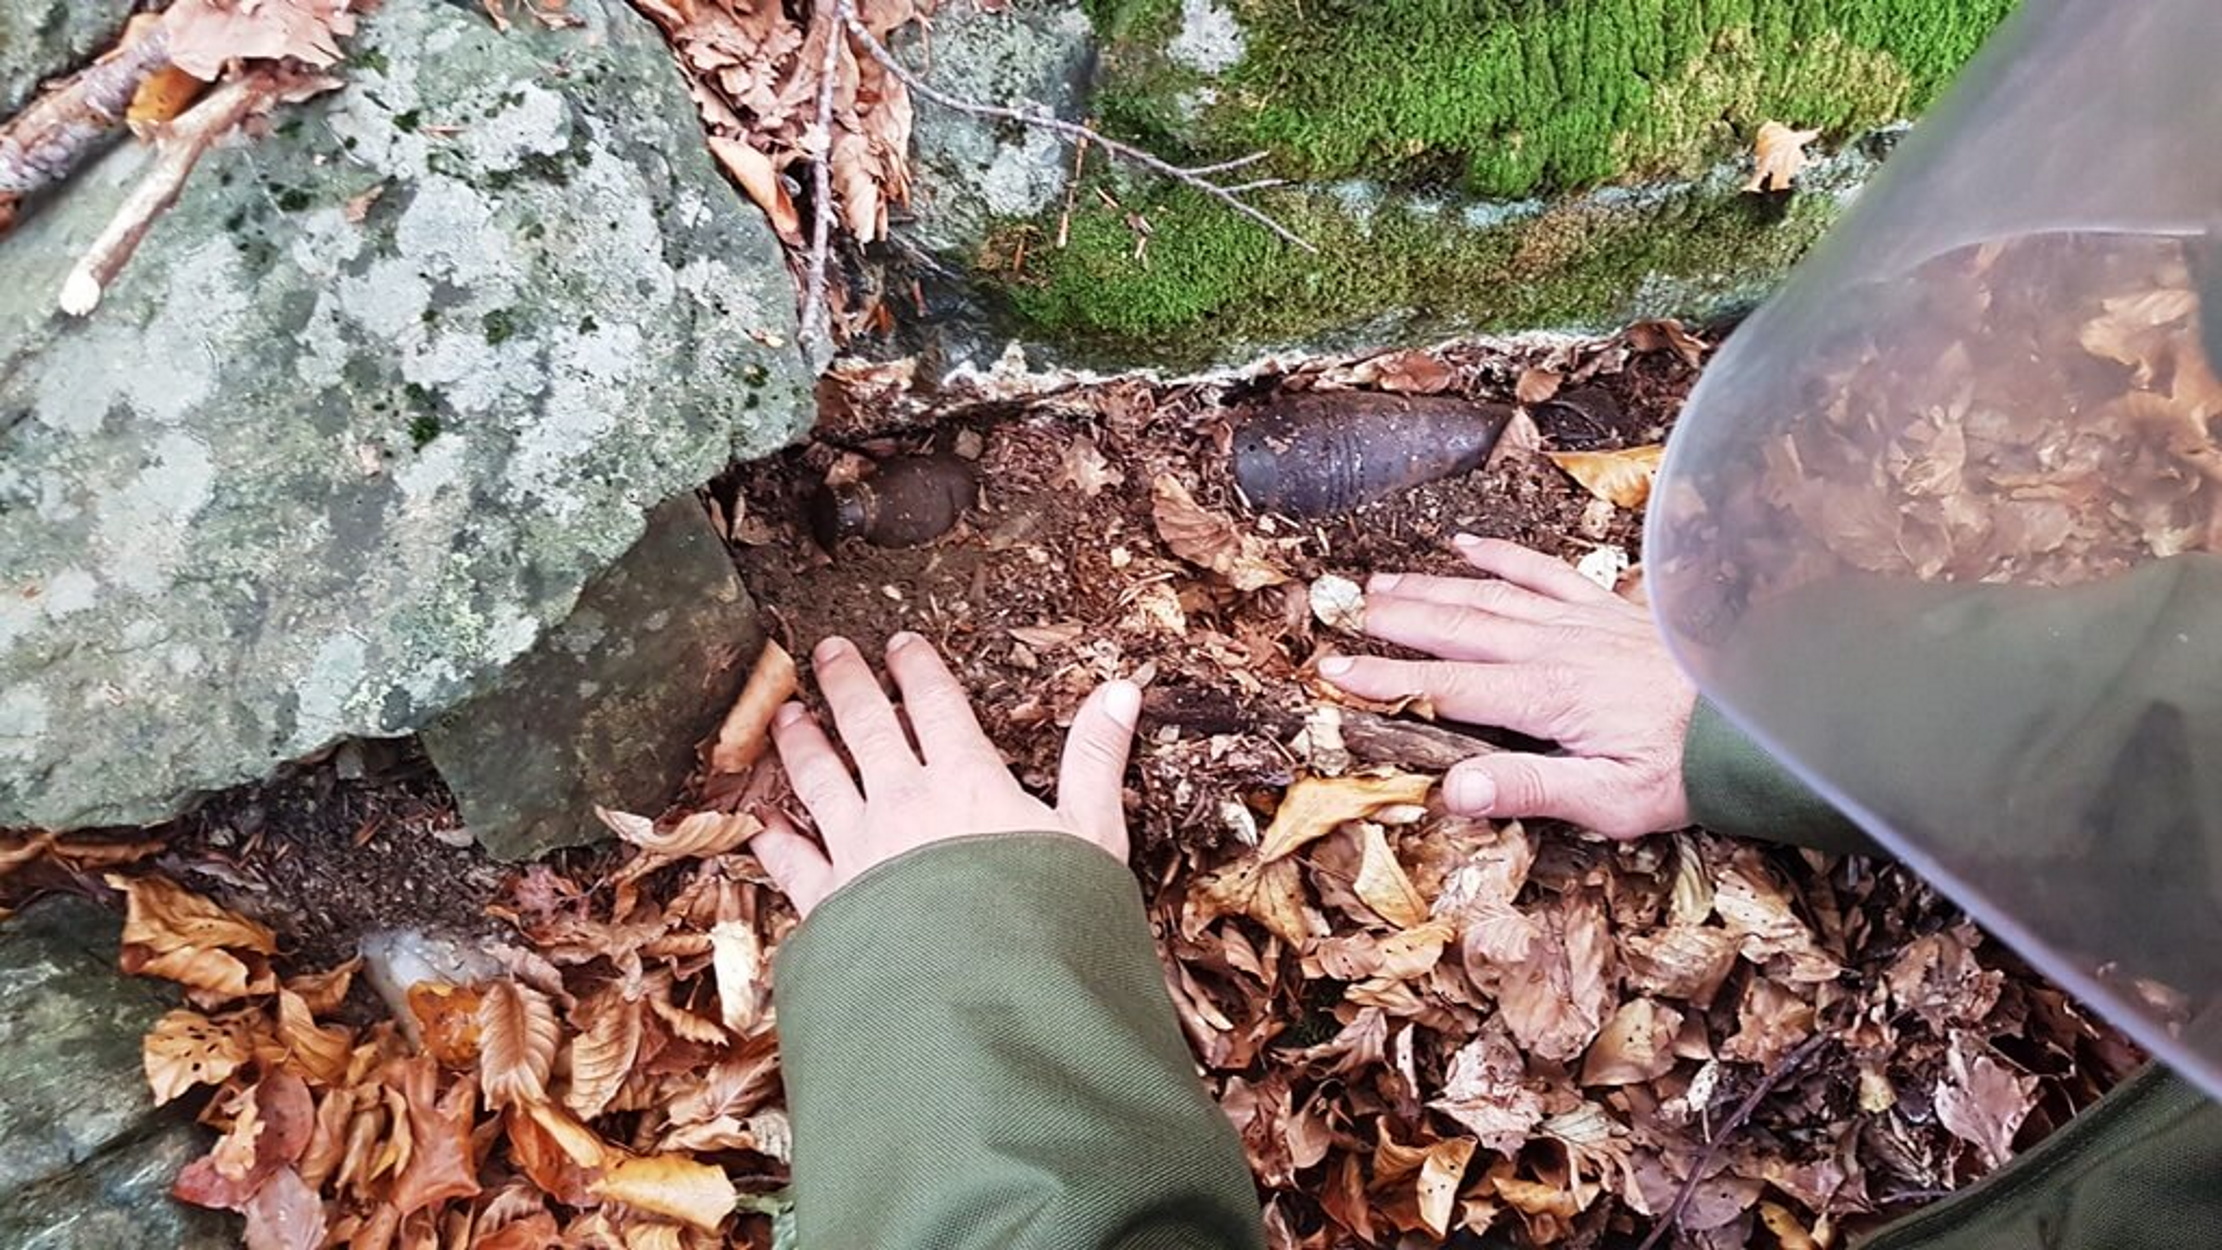 Θερμοπύλες: Αγρότης έσκαβε στο χωράφι του και βρήκε χειροβομβίδες